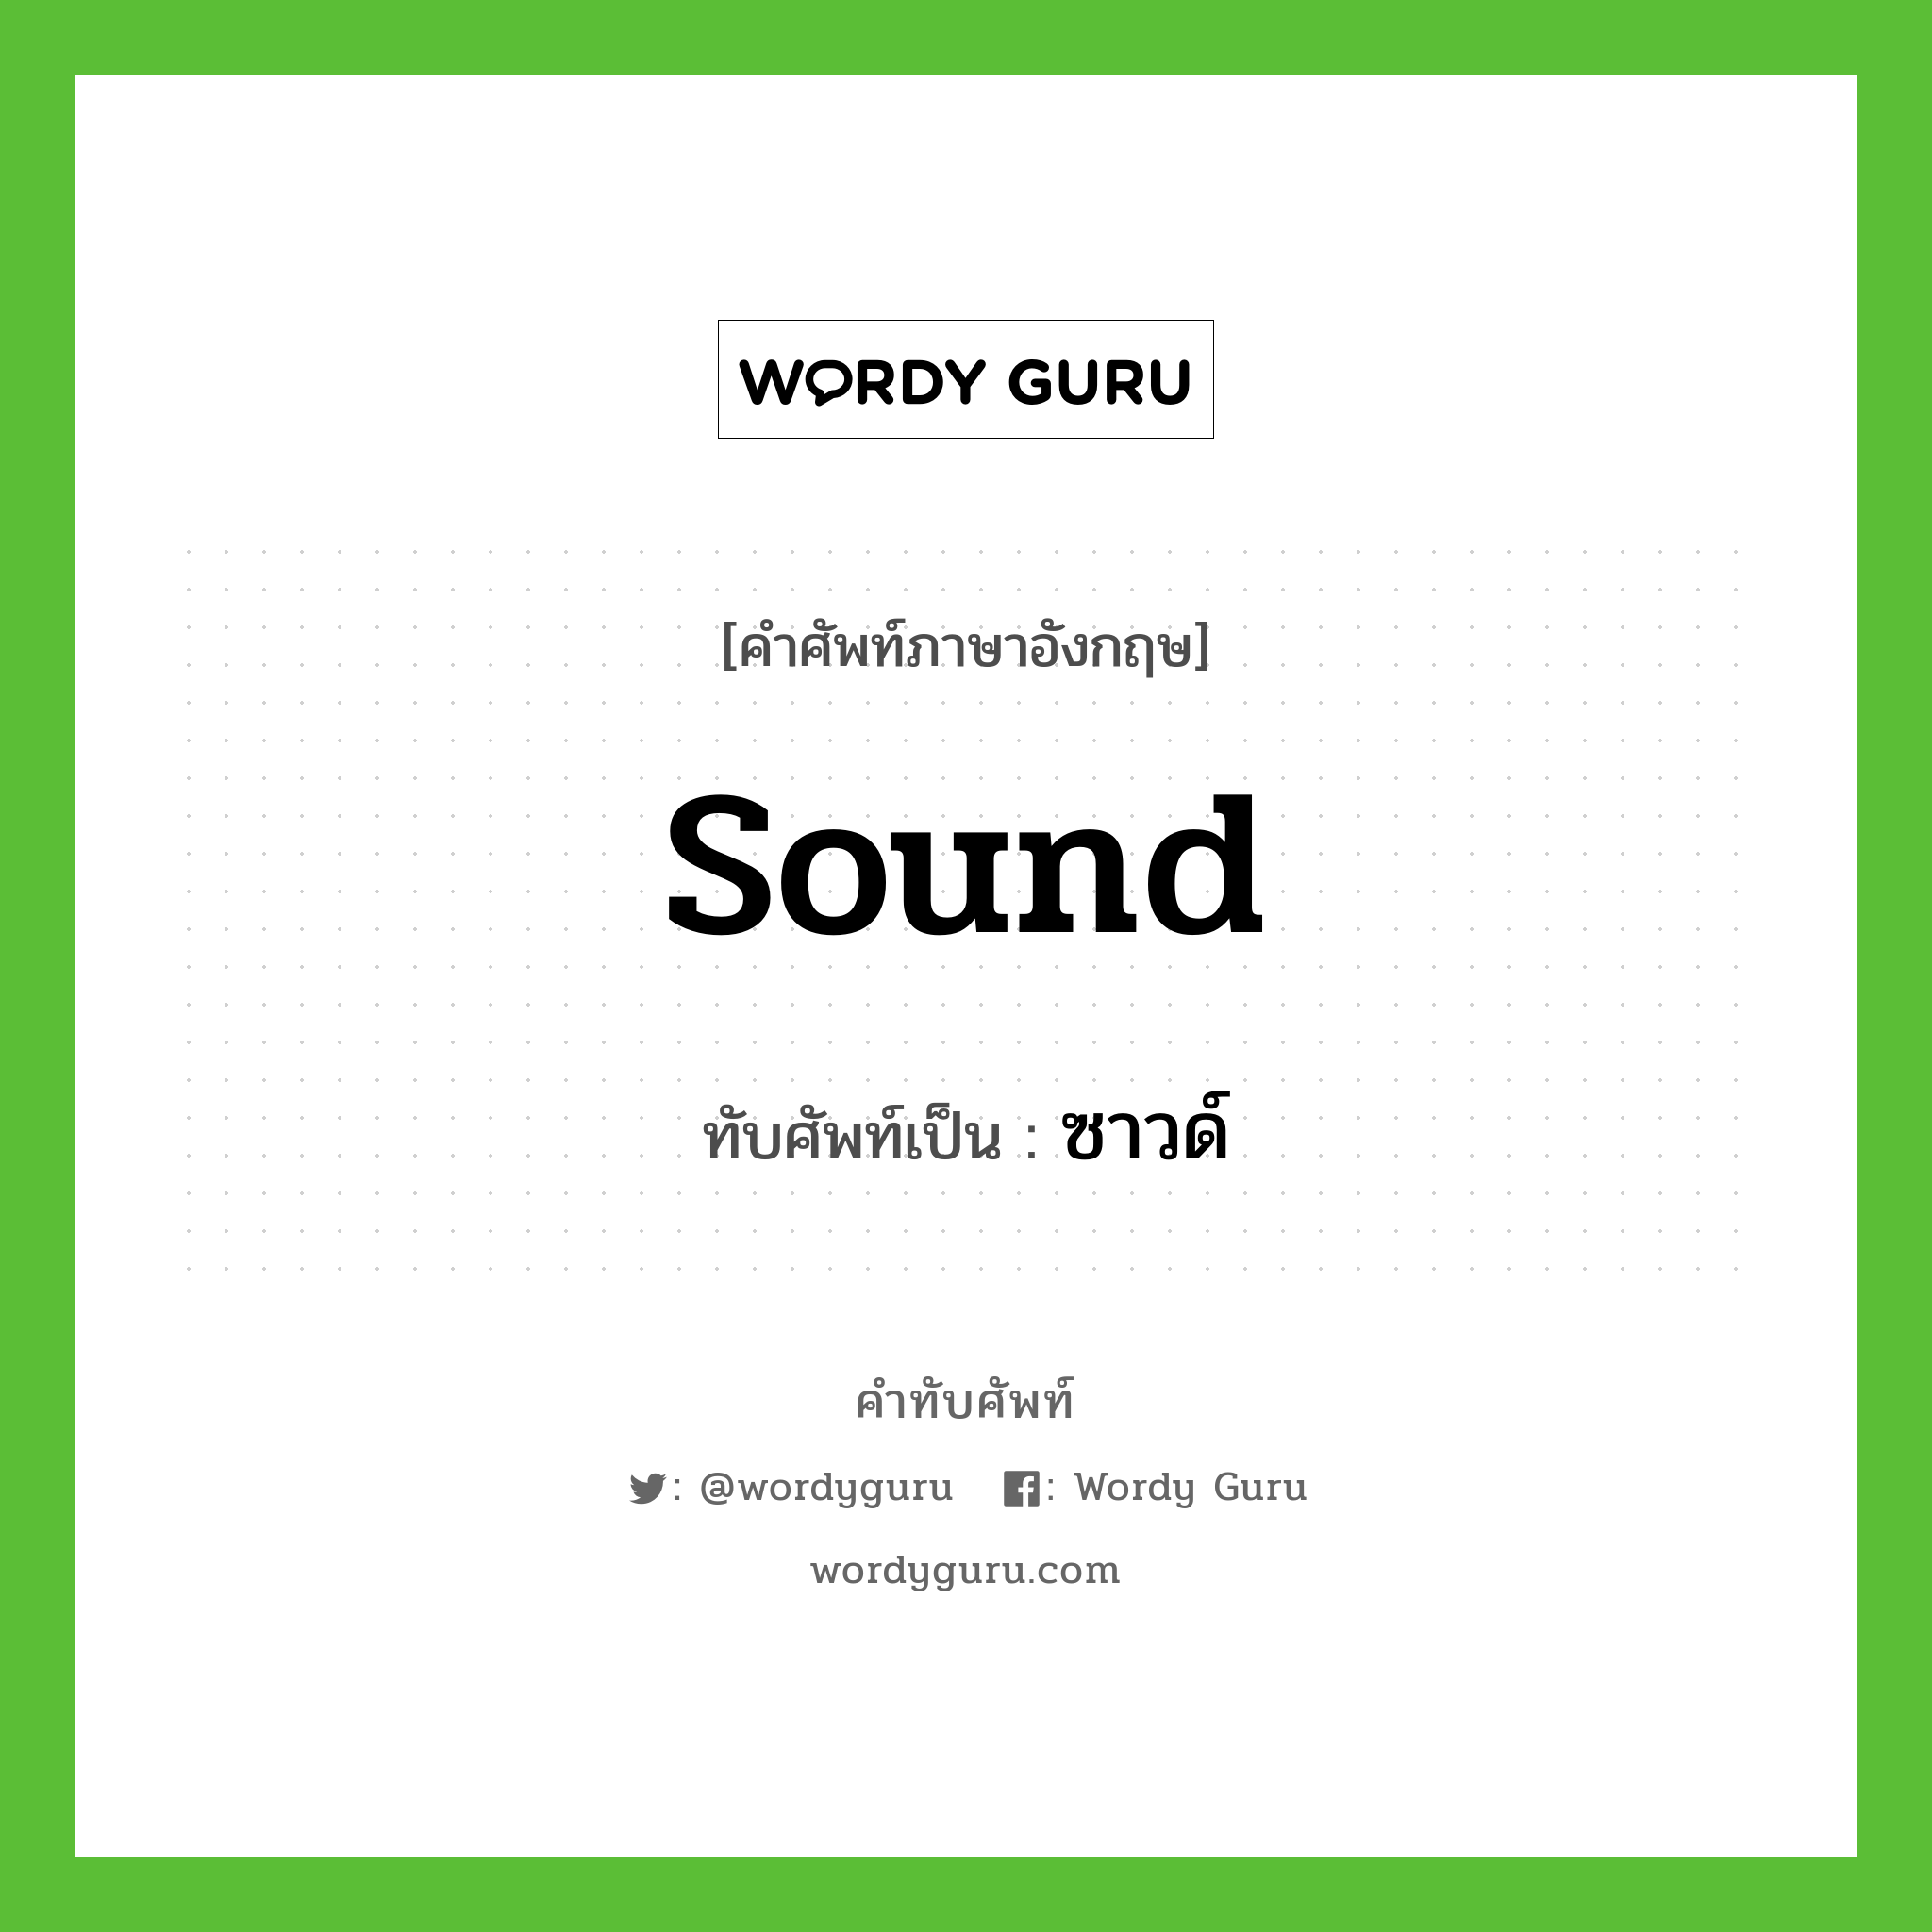 sound เขียนเป็นคำไทยว่าอะไร?, คำศัพท์ภาษาอังกฤษ sound ทับศัพท์เป็น ซาวด์